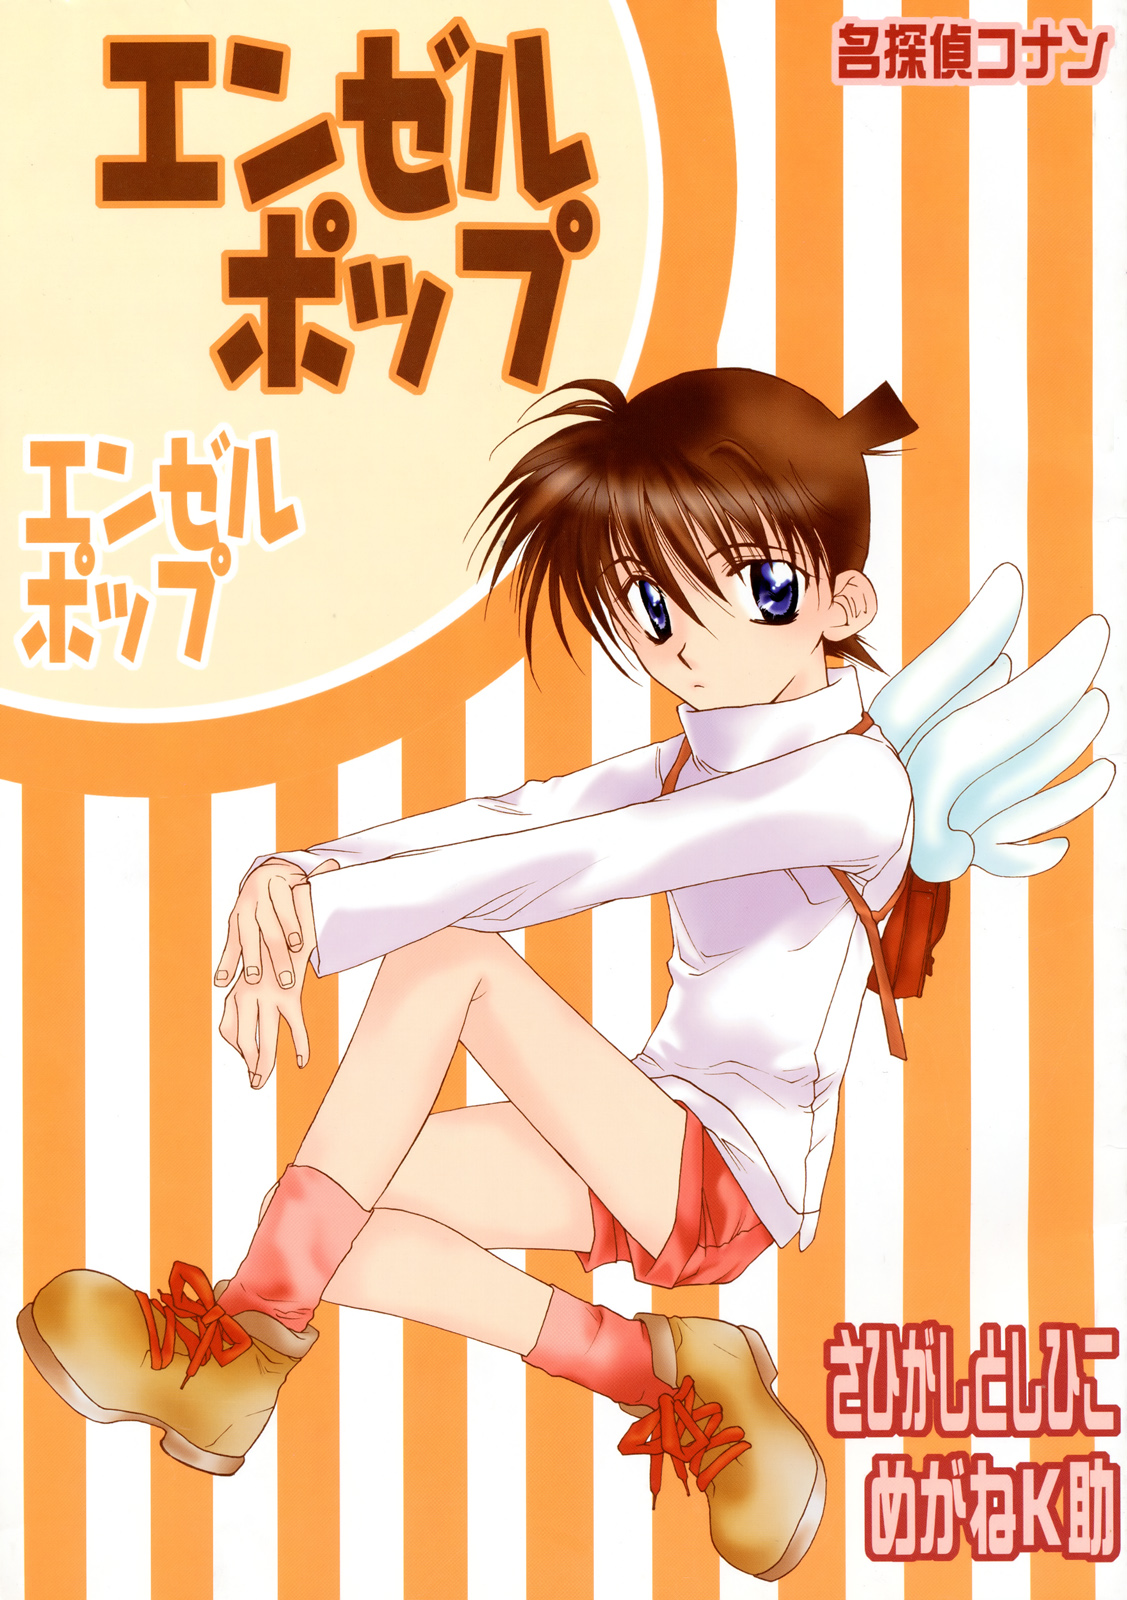 Detective Conan Angel Pop (Doujinshi) Oneshot